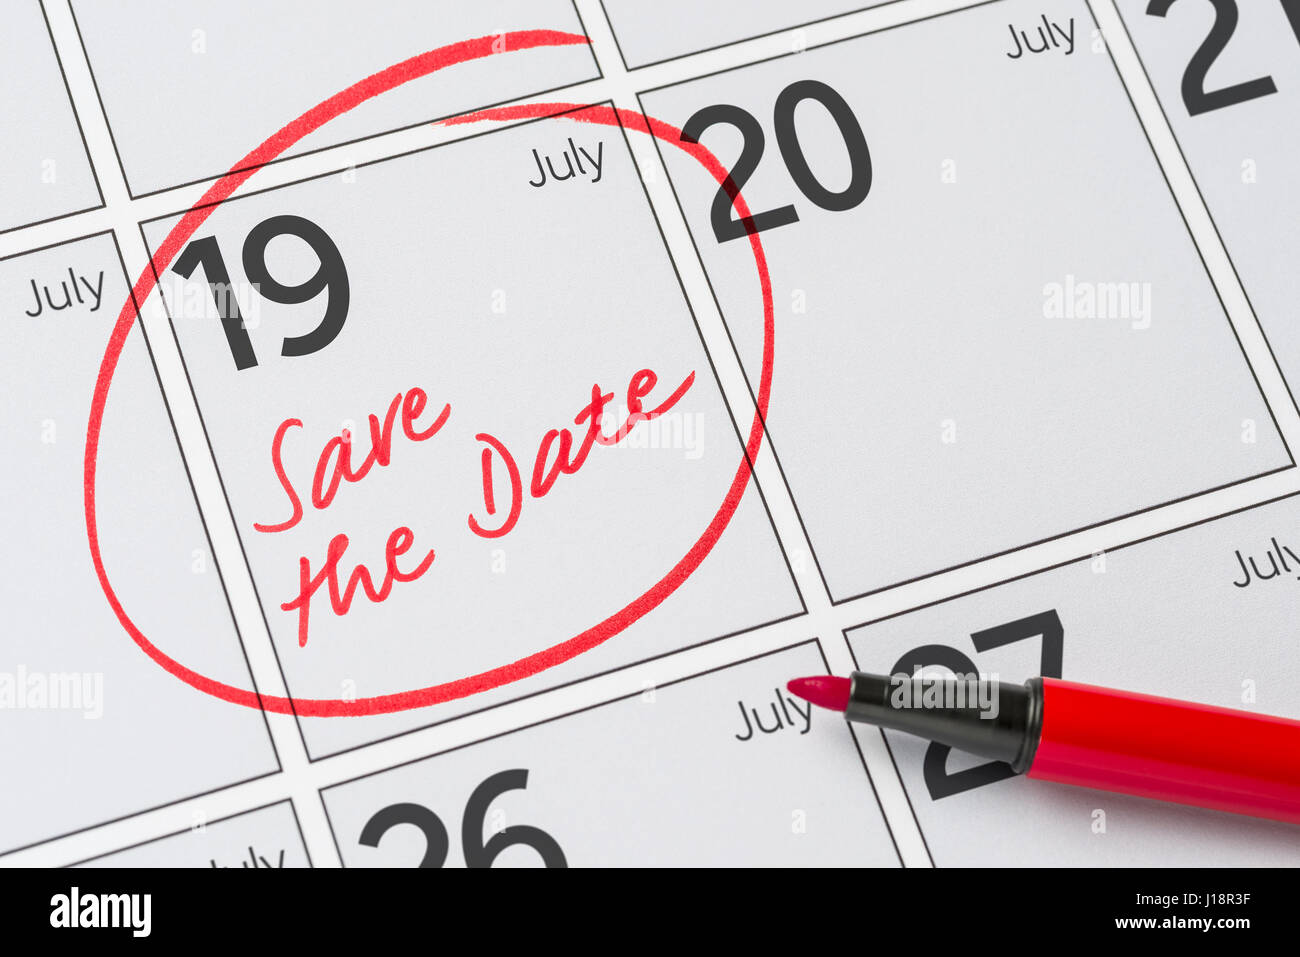 Enregistrer la date inscrite sur un calendrier - Juillet 19 Banque D'Images